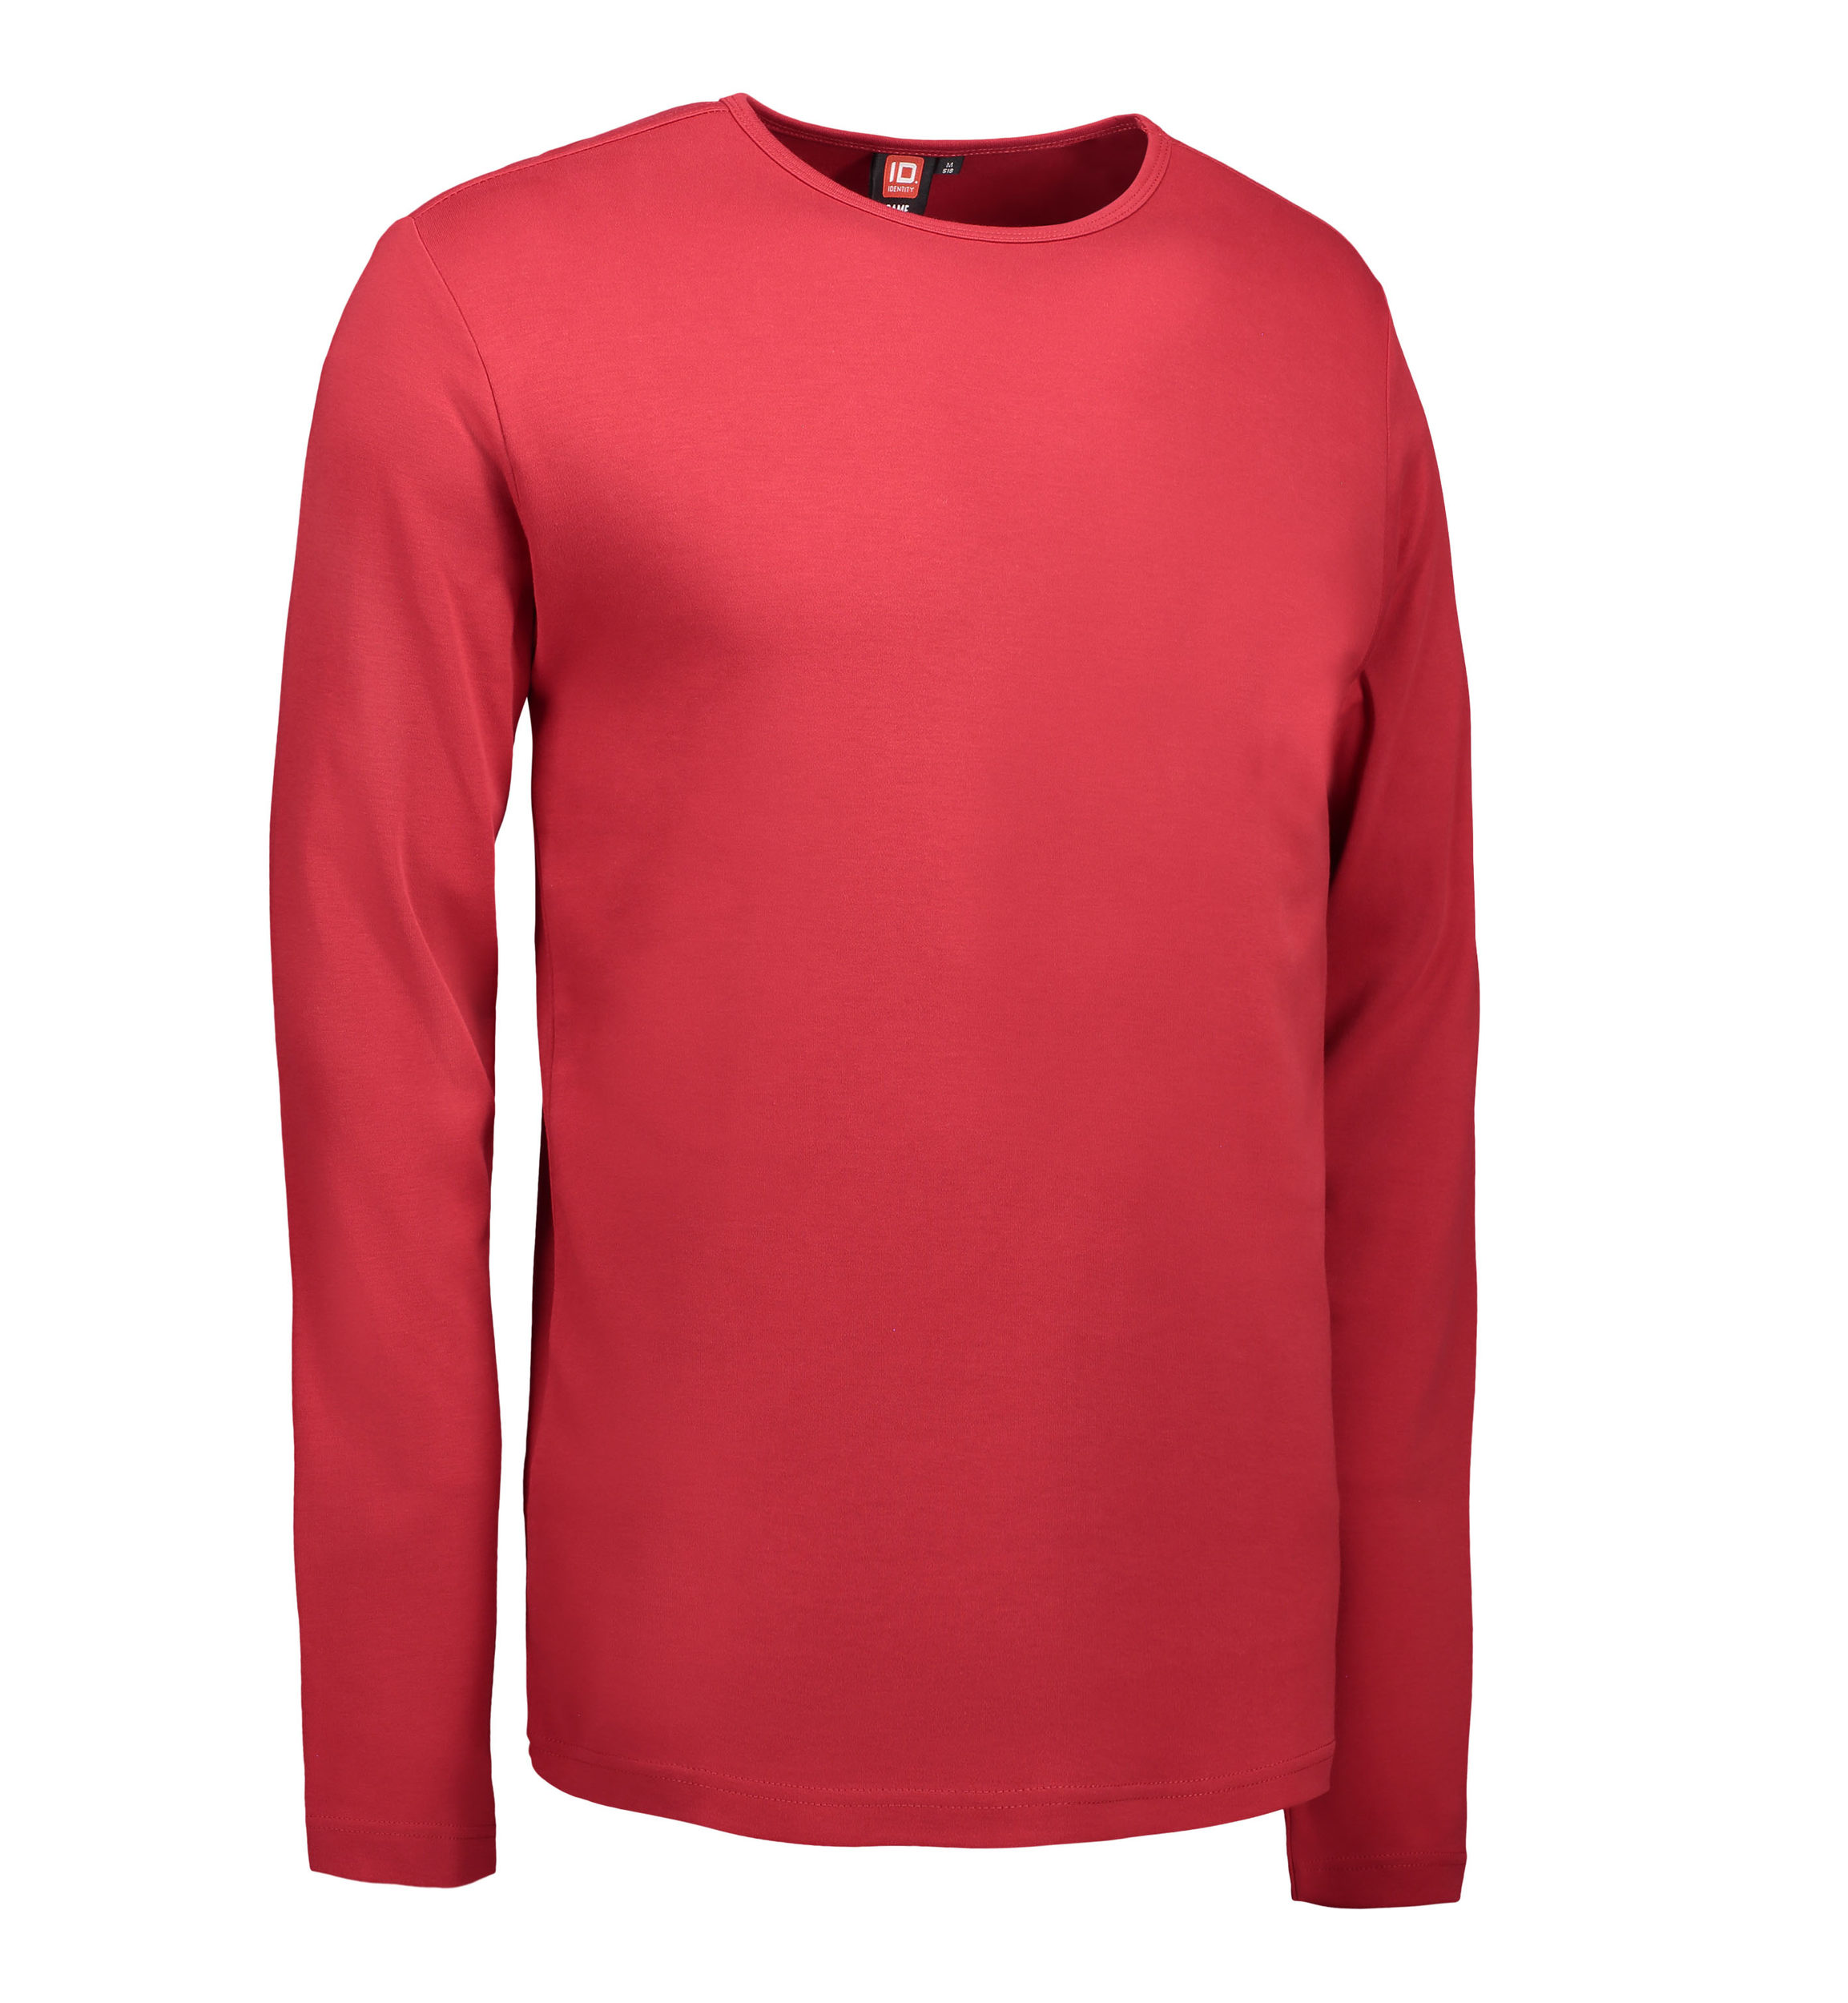 Billede af Rød langærmet t-shirt til mænd - 2XL hos Sygeplejebutikken.dk